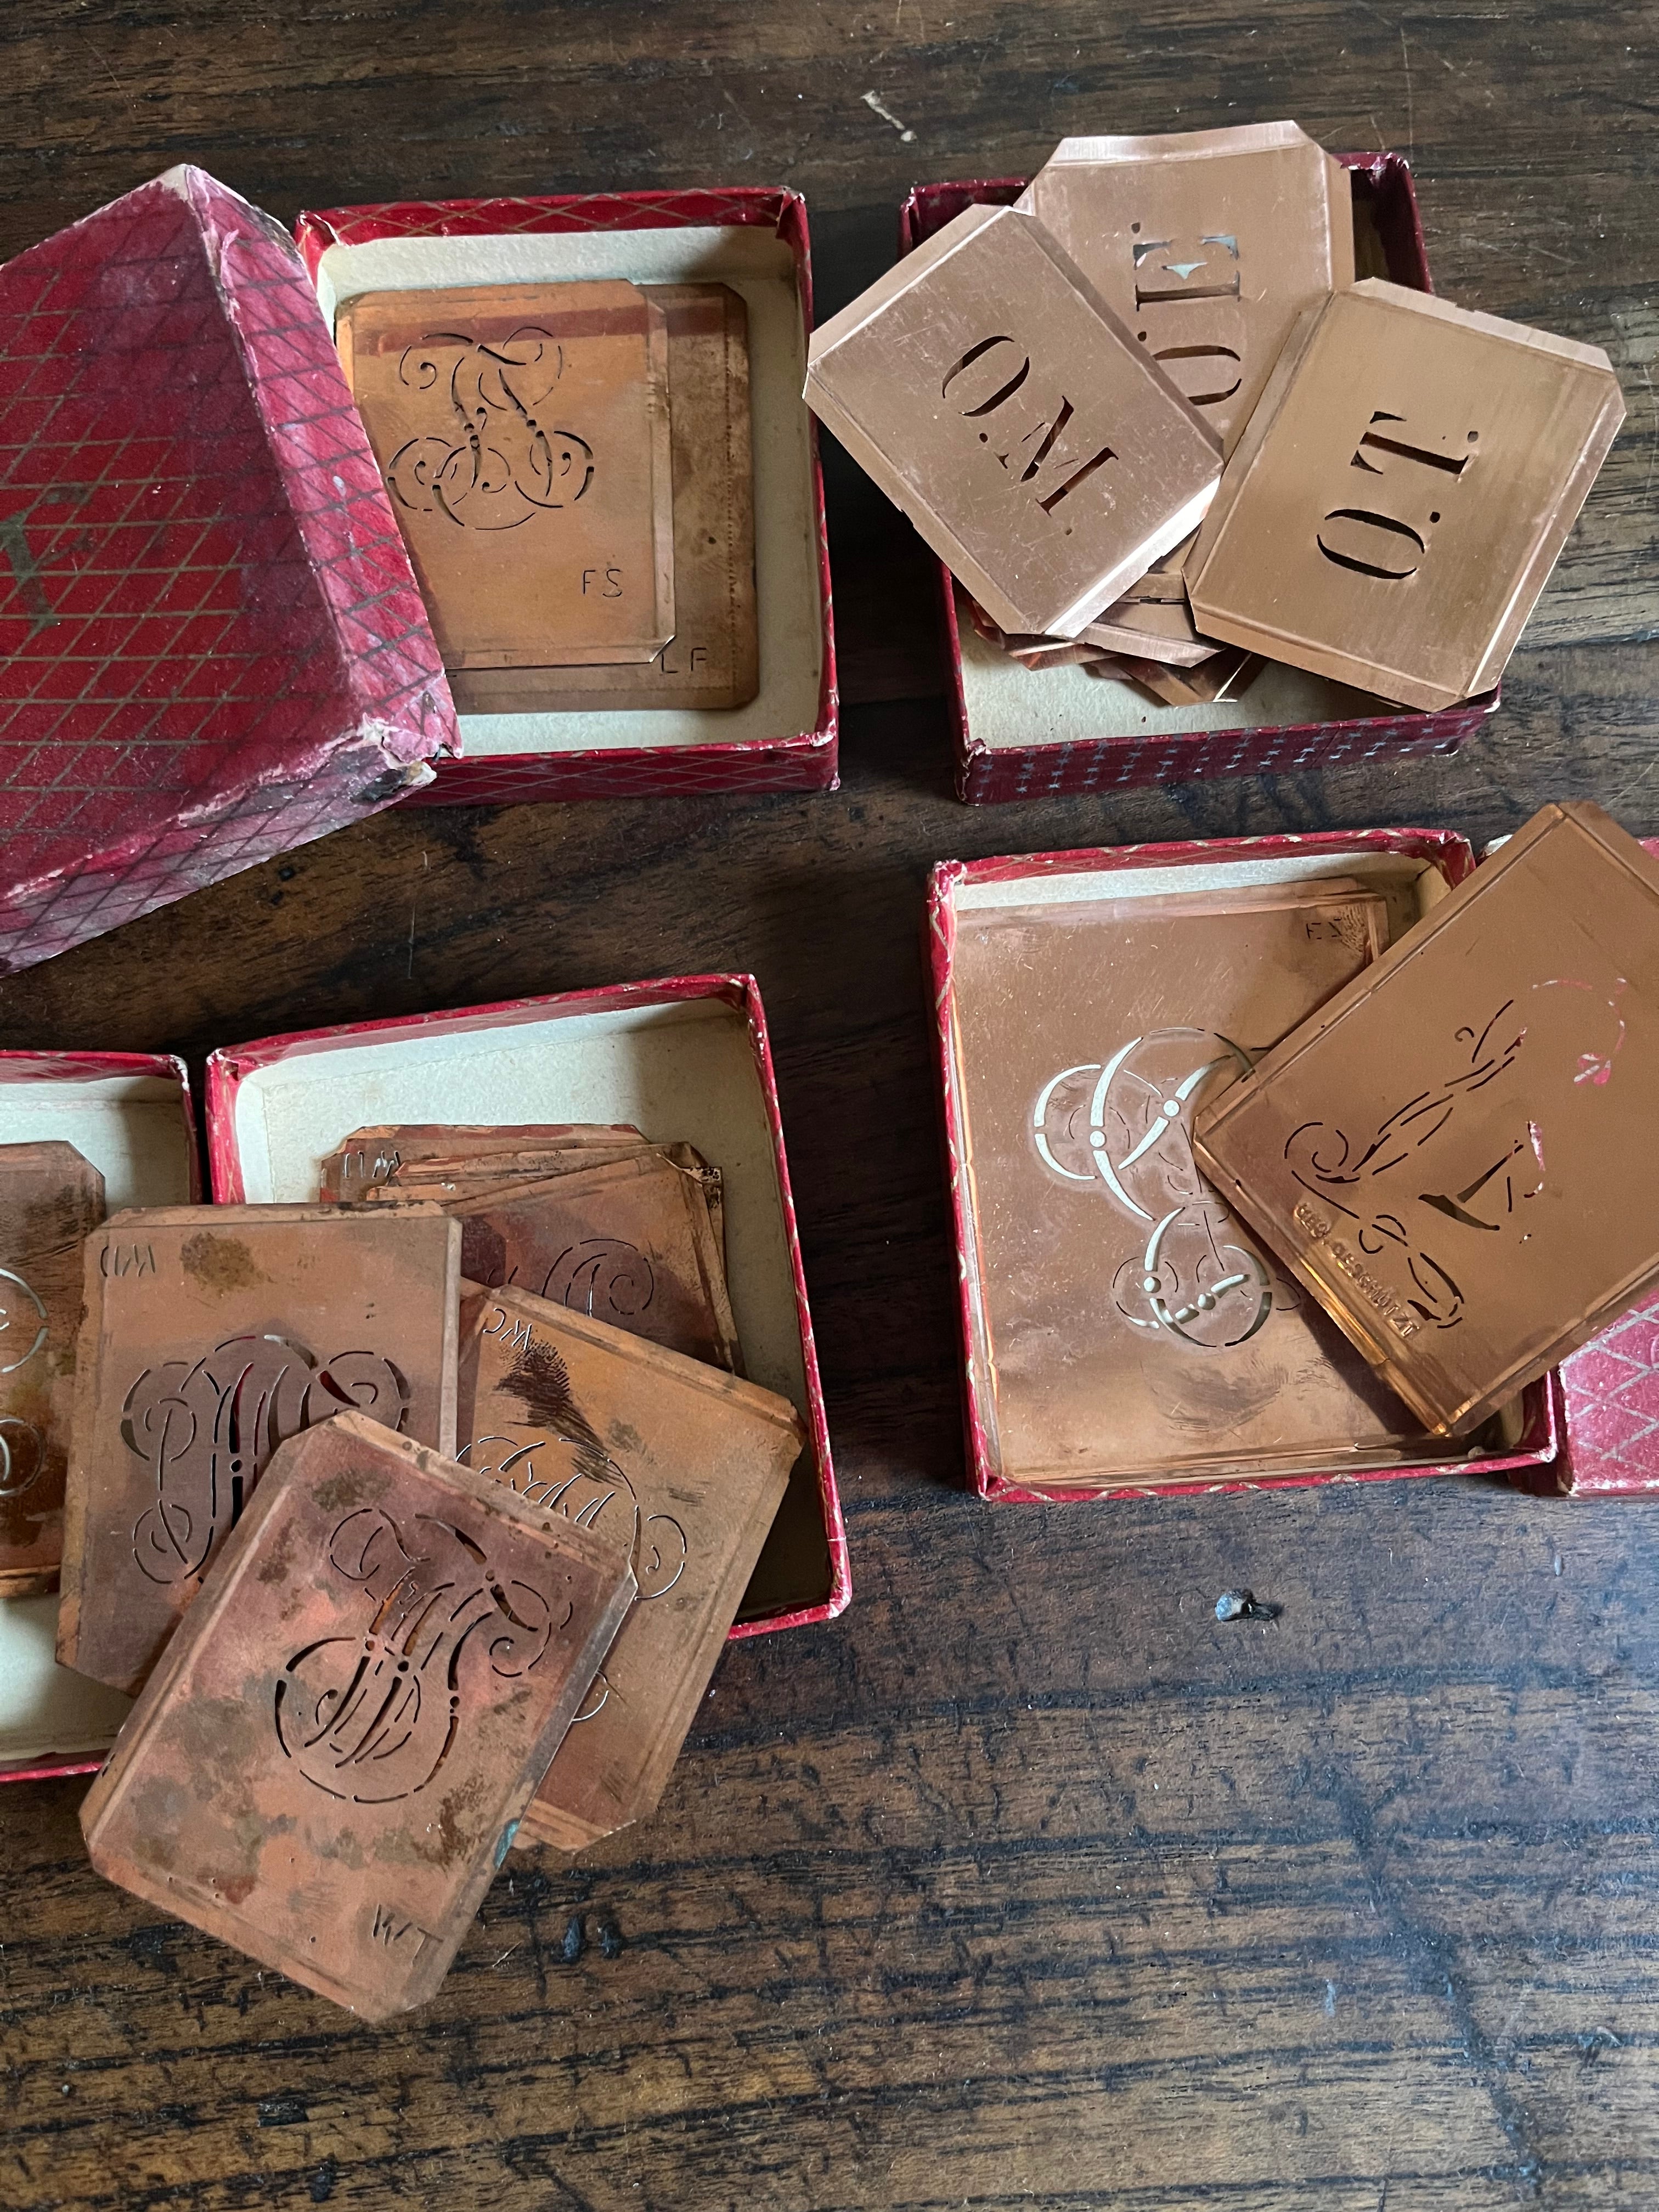 Kleine Sammlung alte Kupferschablonen Monogramme 33 Stück Stickvorlage